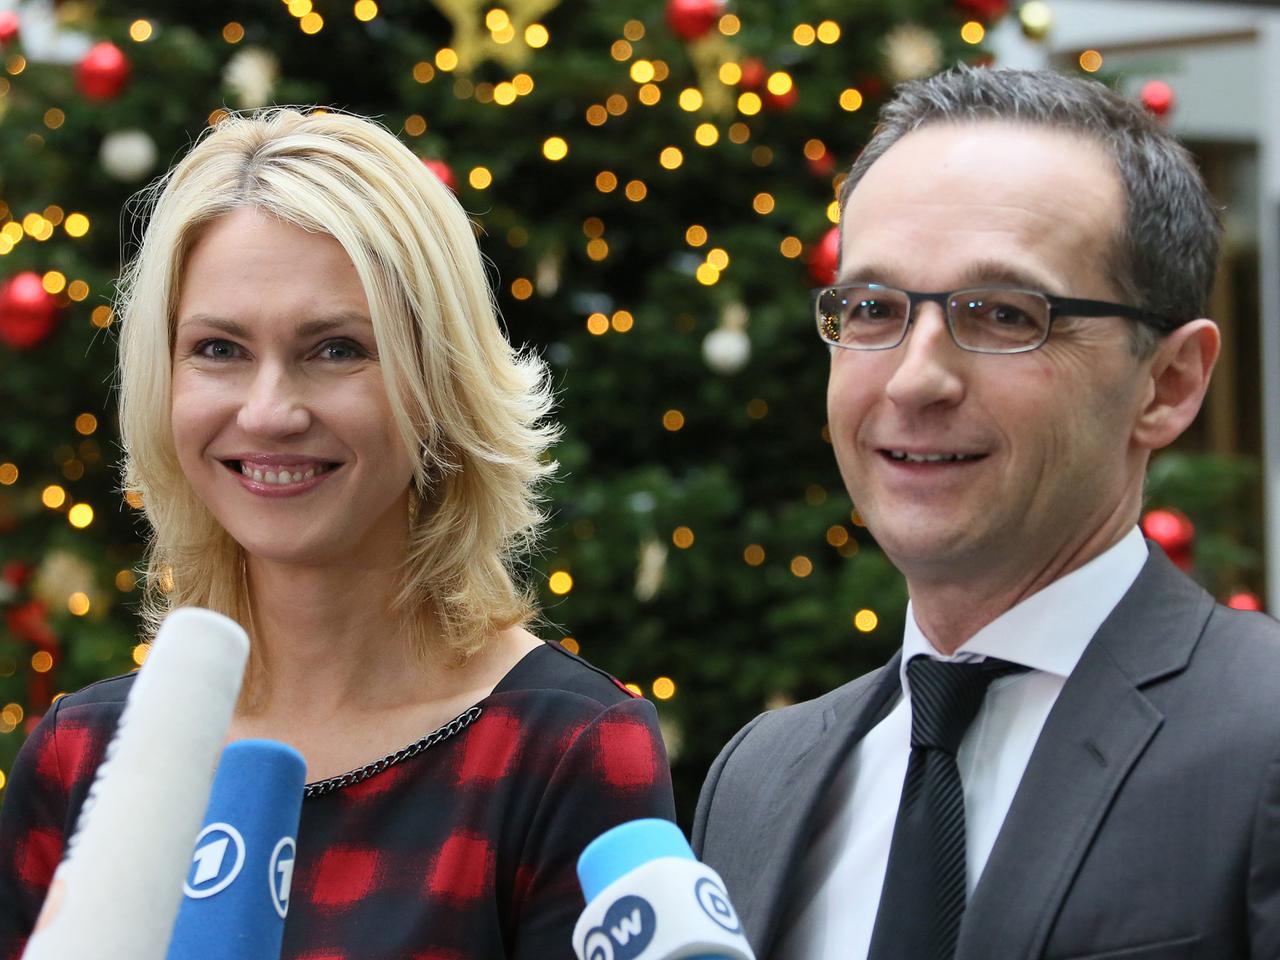 Bundesjustizminister Heiko Maas (SPD) und Bundesfamilienministerin Manuela Schwesig (SPD) geben am 11.12.2014 in Berlin eine Pressekonferenz zur gesetzlichen Frauenquote.